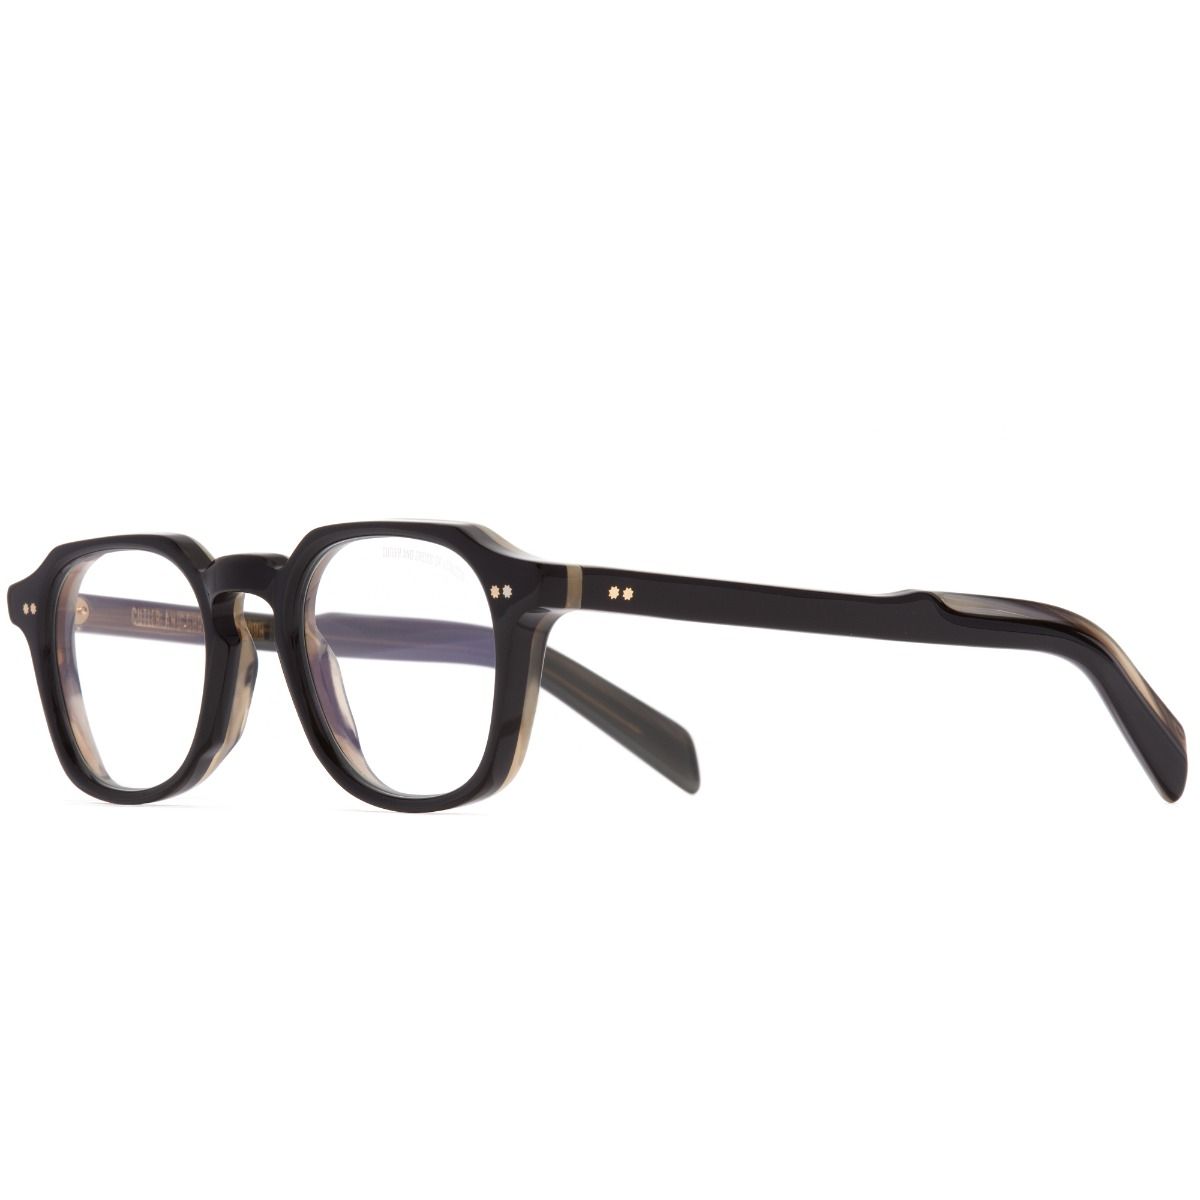 GR03 Square Optical Glasses-Black on Horn